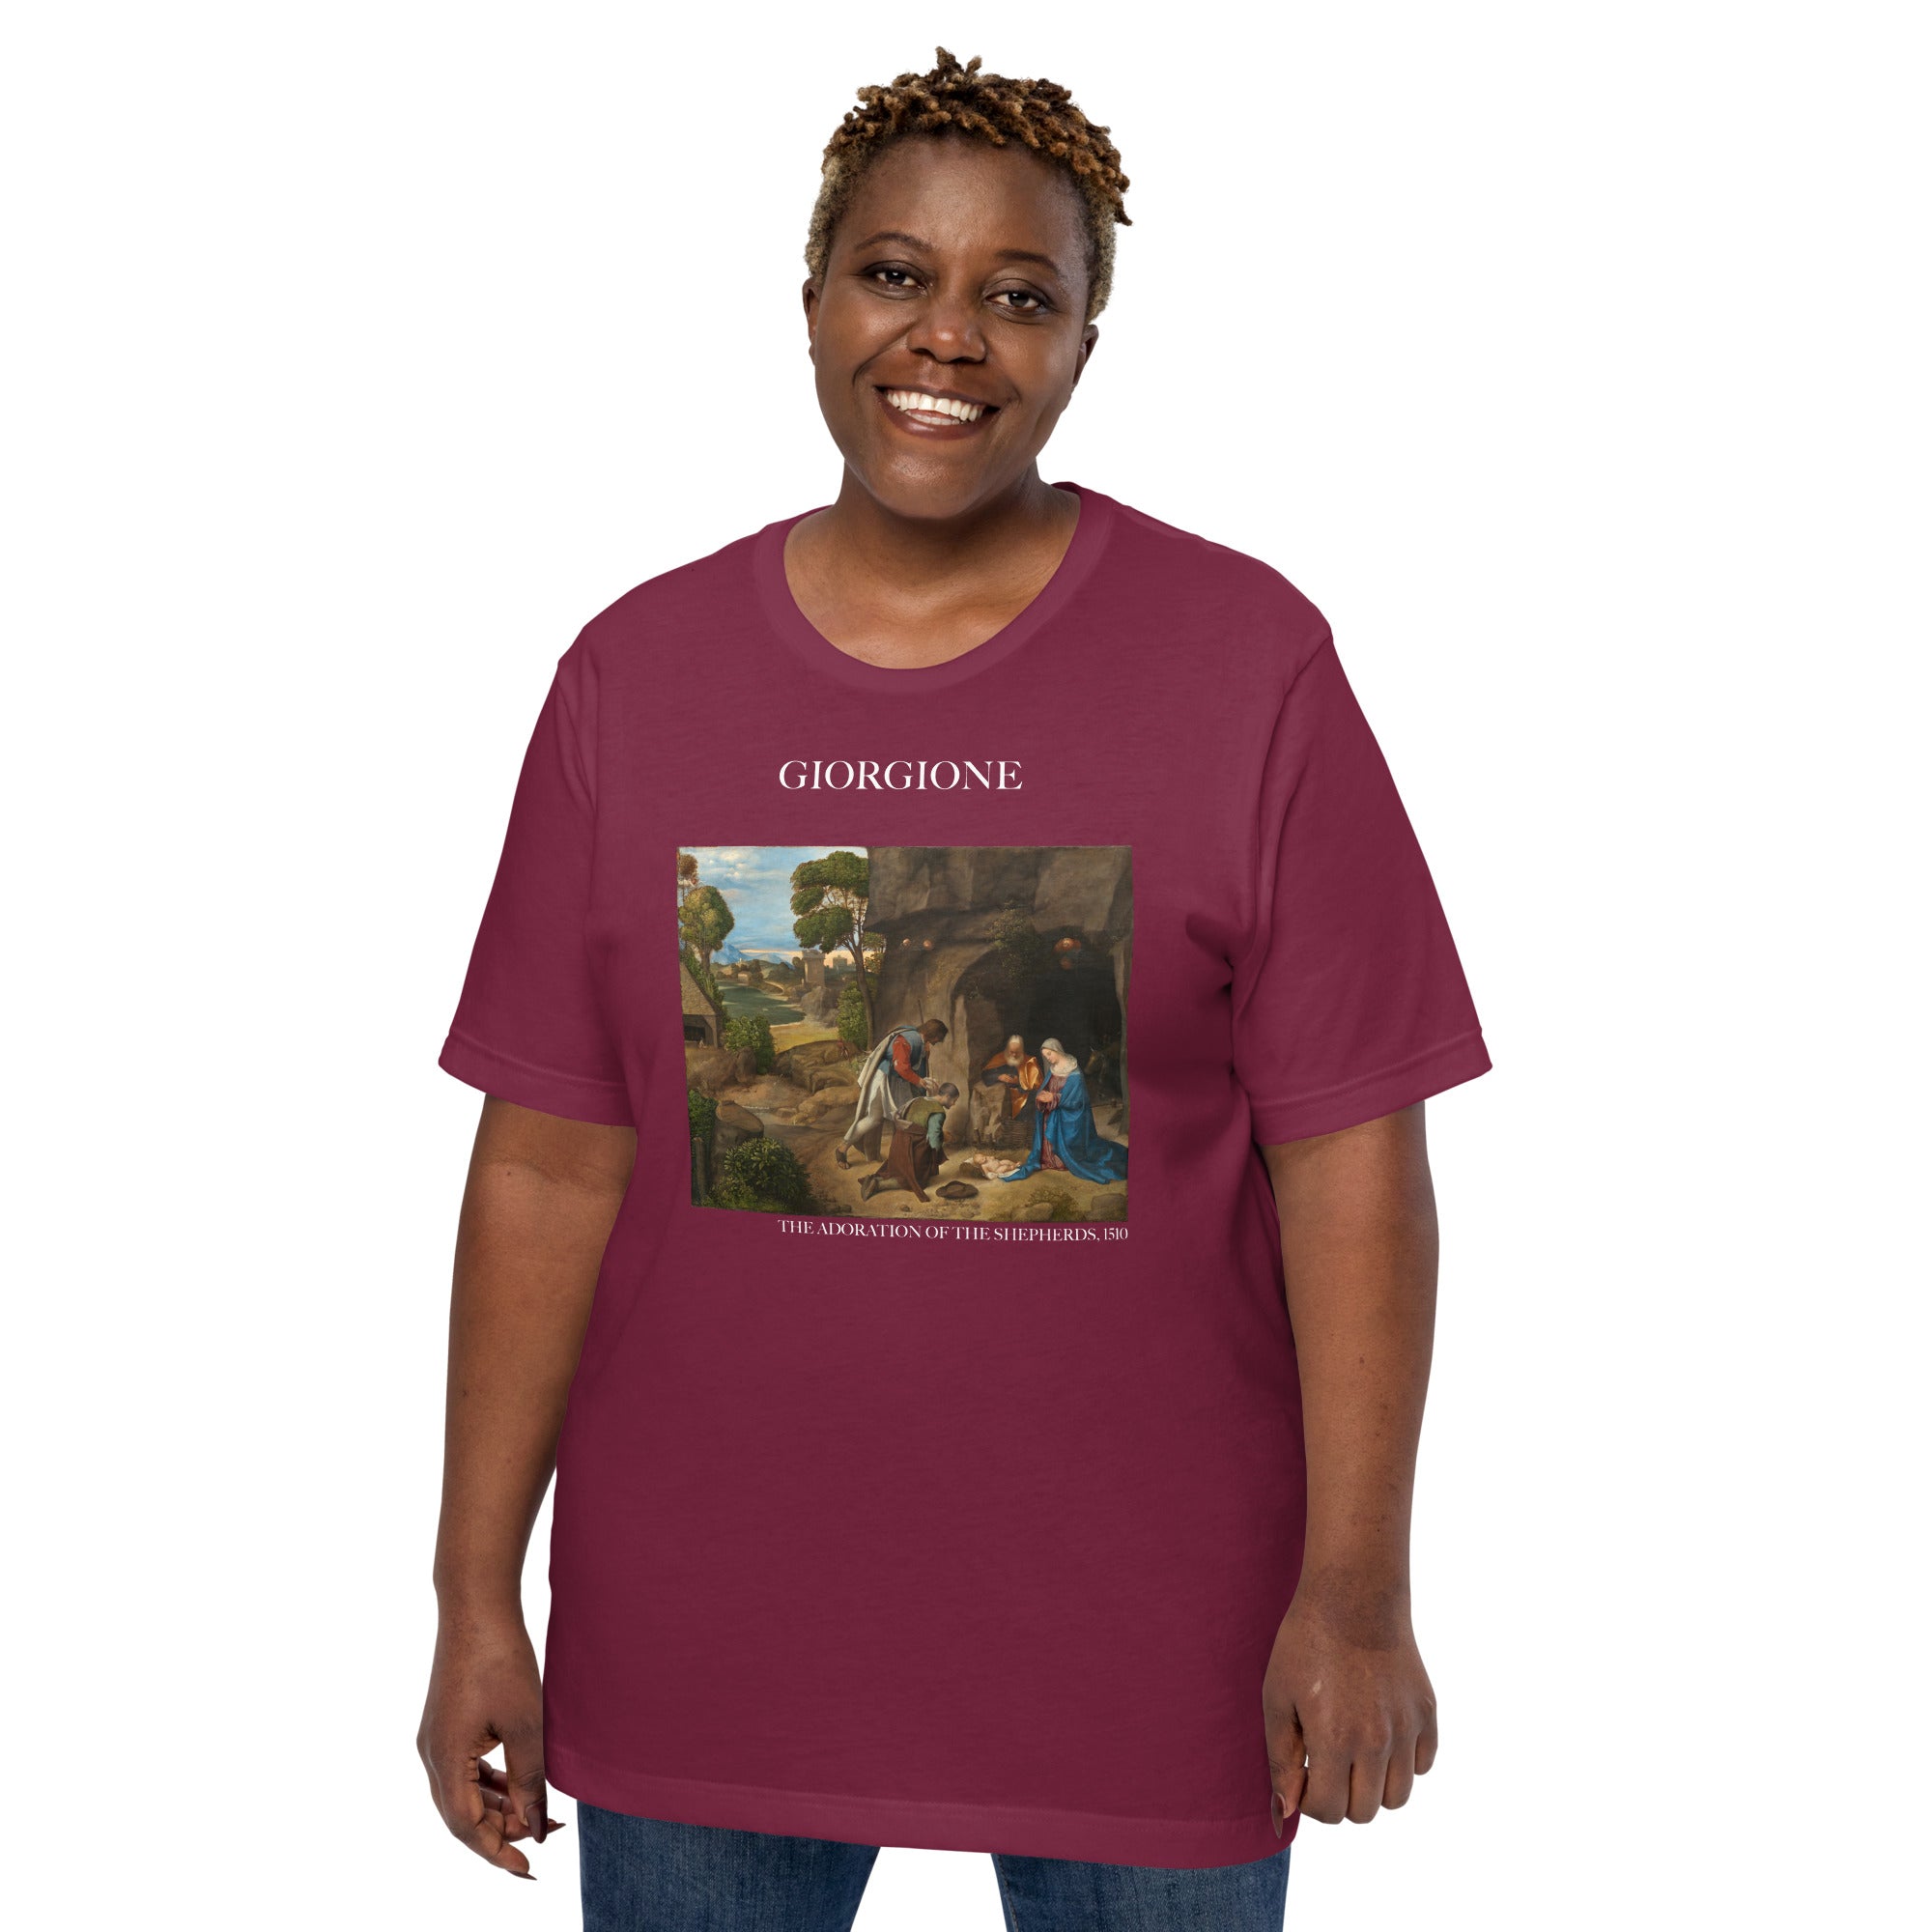 Giorgione T-Shirt mit berühmtem Gemälde „Die Anbetung der Hirten“ | Unisex-T-Shirt im klassischen Kunststil